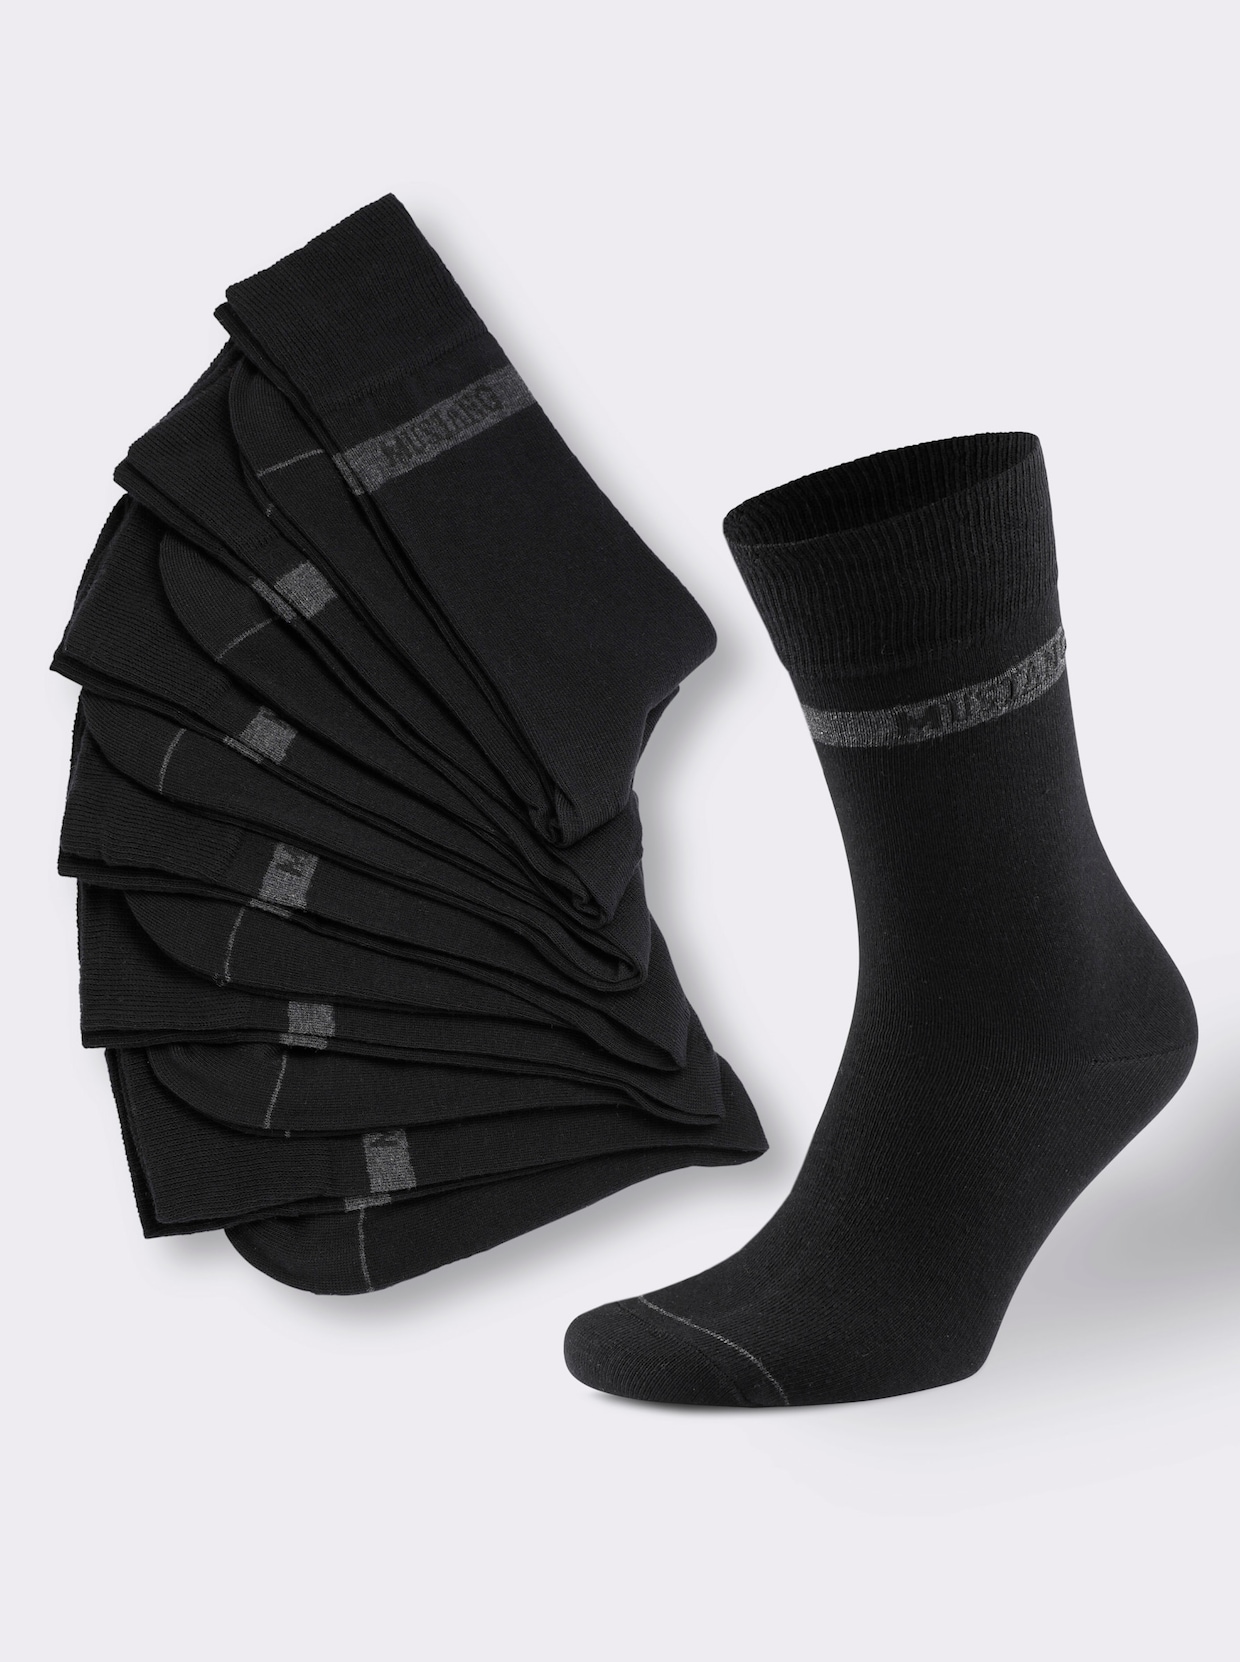 Mustang Herren-Socken - schwarz